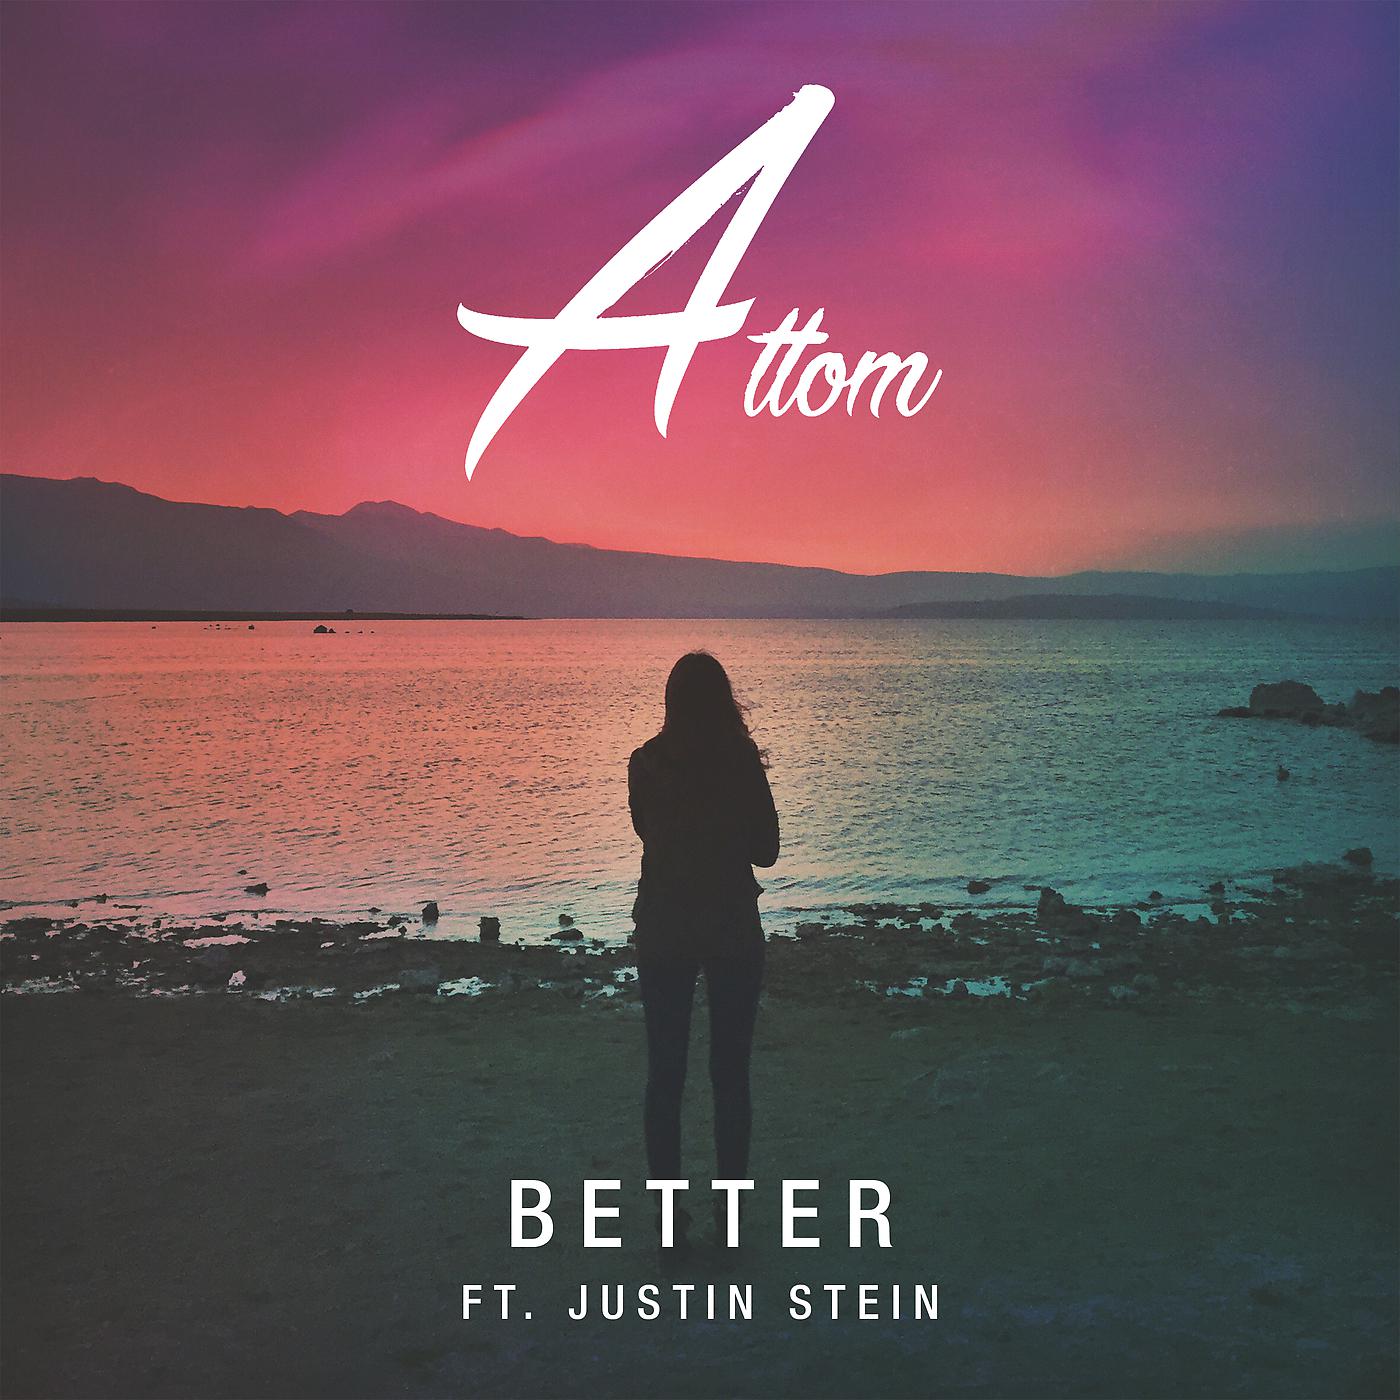 Better feat. Justin Stein. Attom. Песня better. Постеры песен.